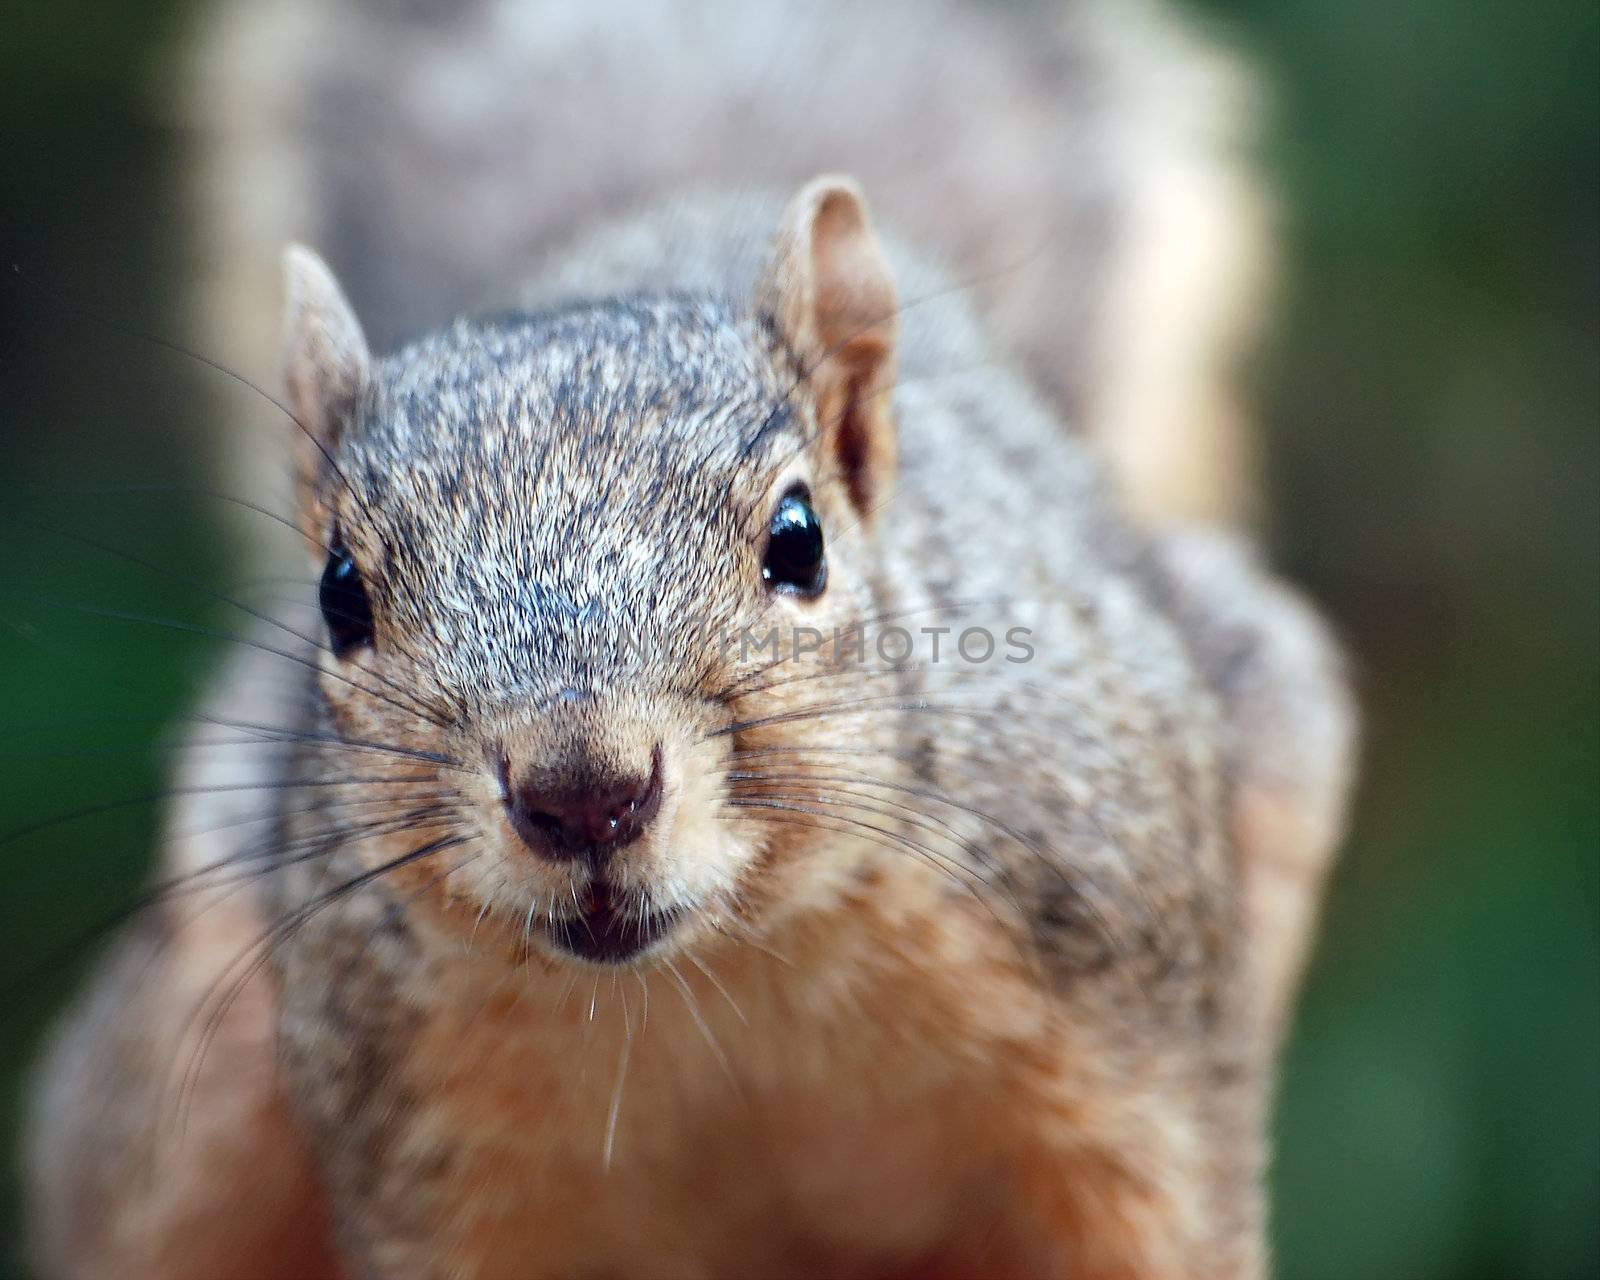 Squirrel by nialat